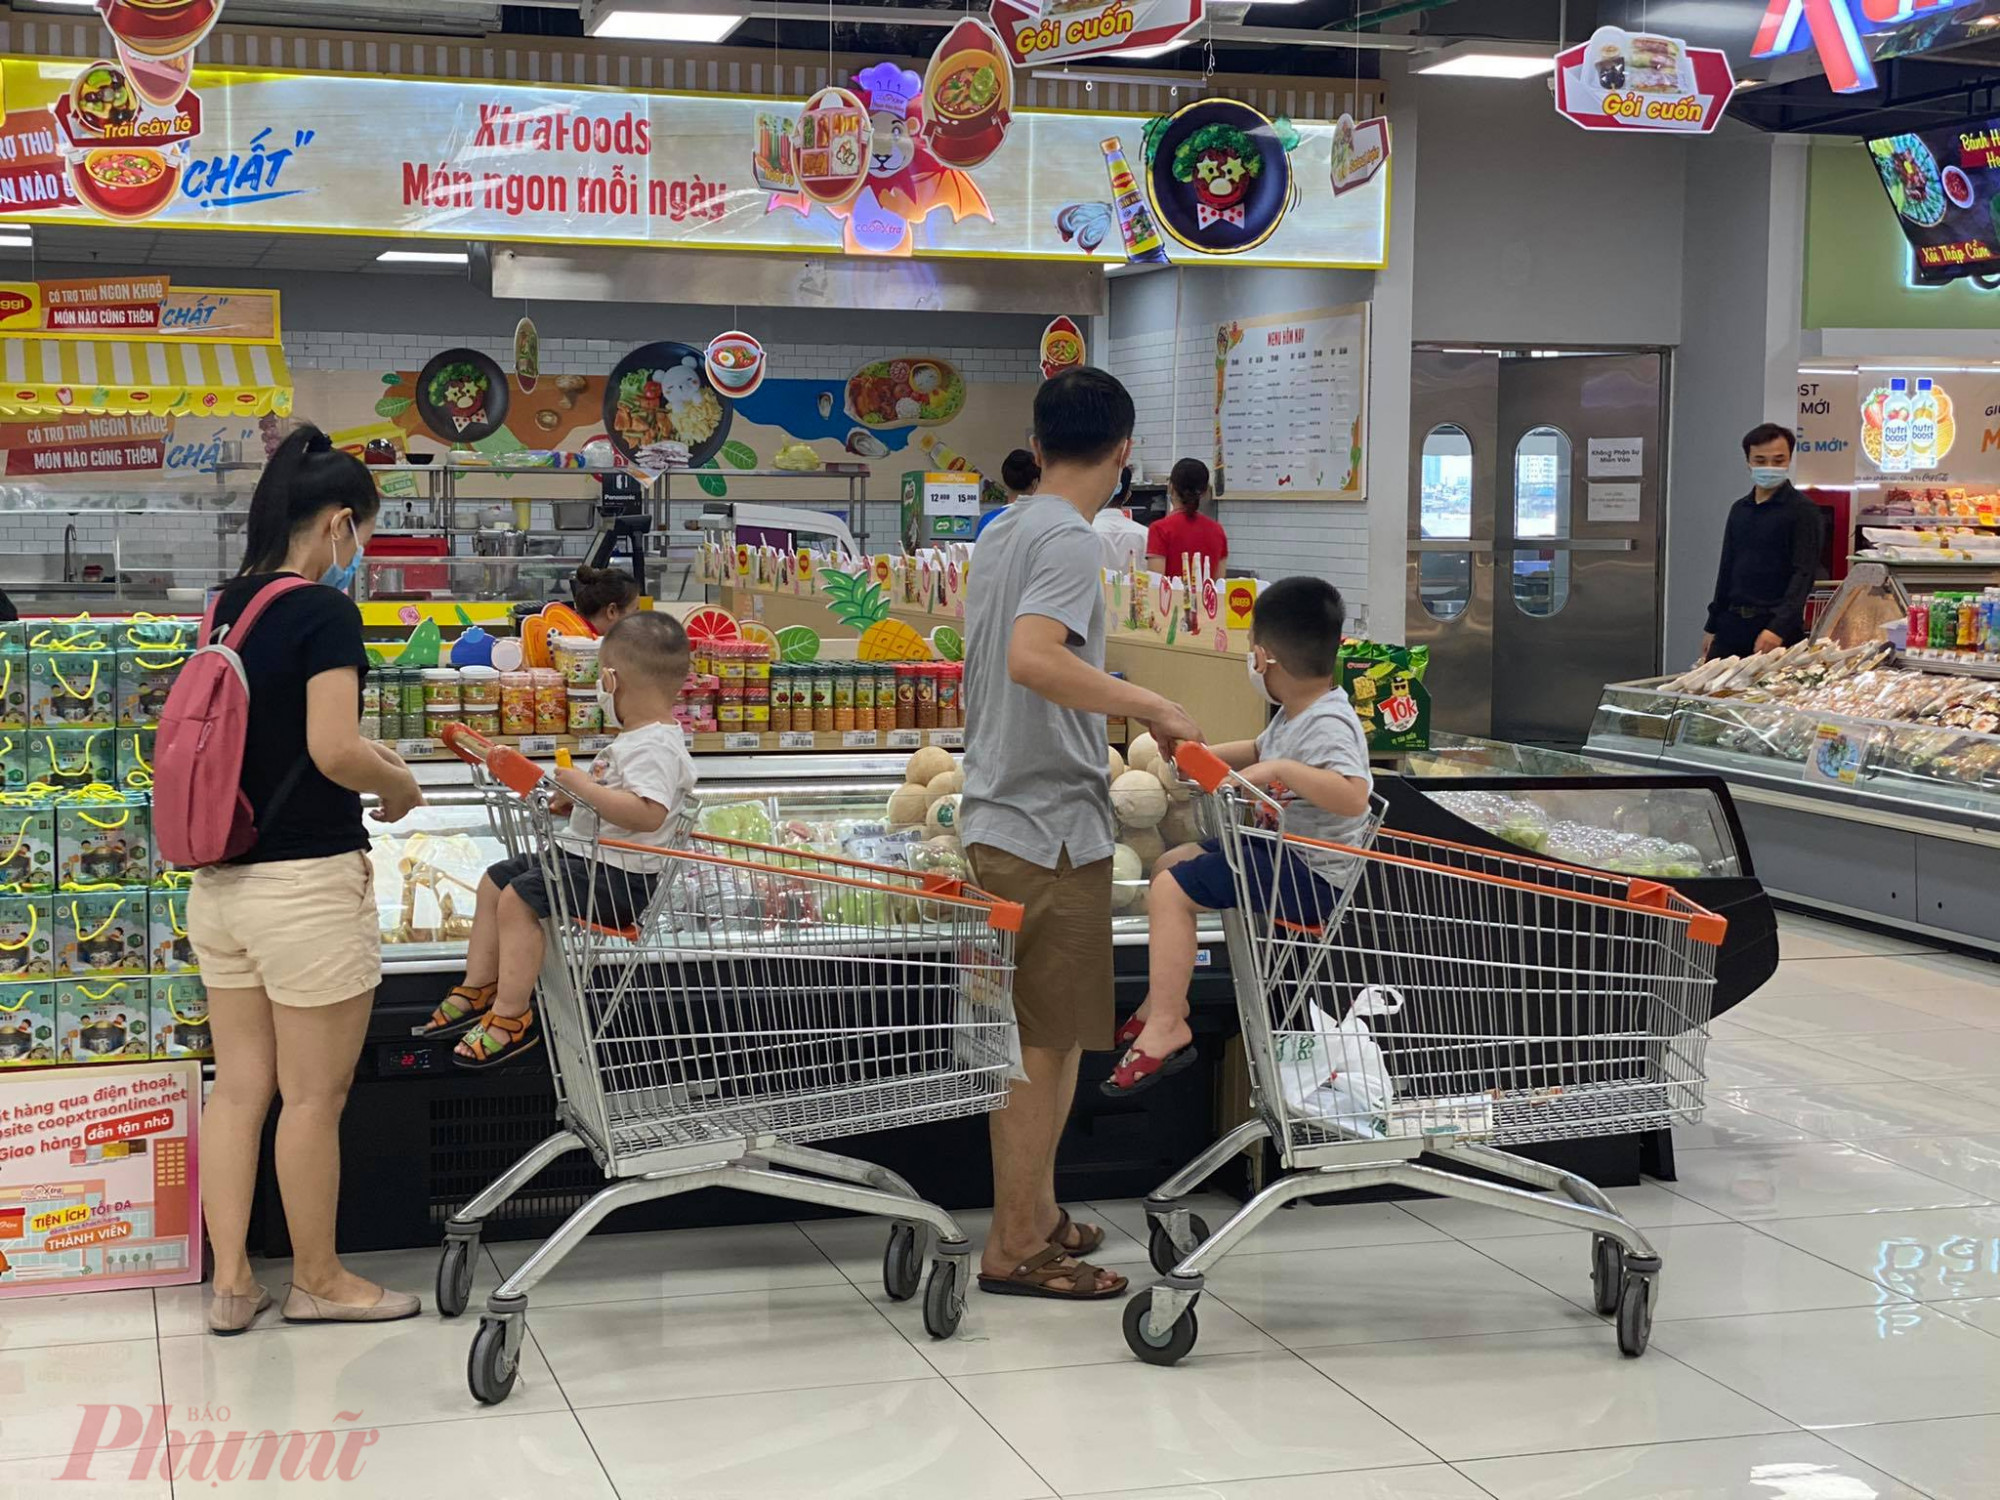 Anh Trung và vợ đưa con đi siêu thị mua thực phẩm, nhưng chỉ lựa chọn theo nhu cầu gia đình, không ý định gom hàng dự trữ